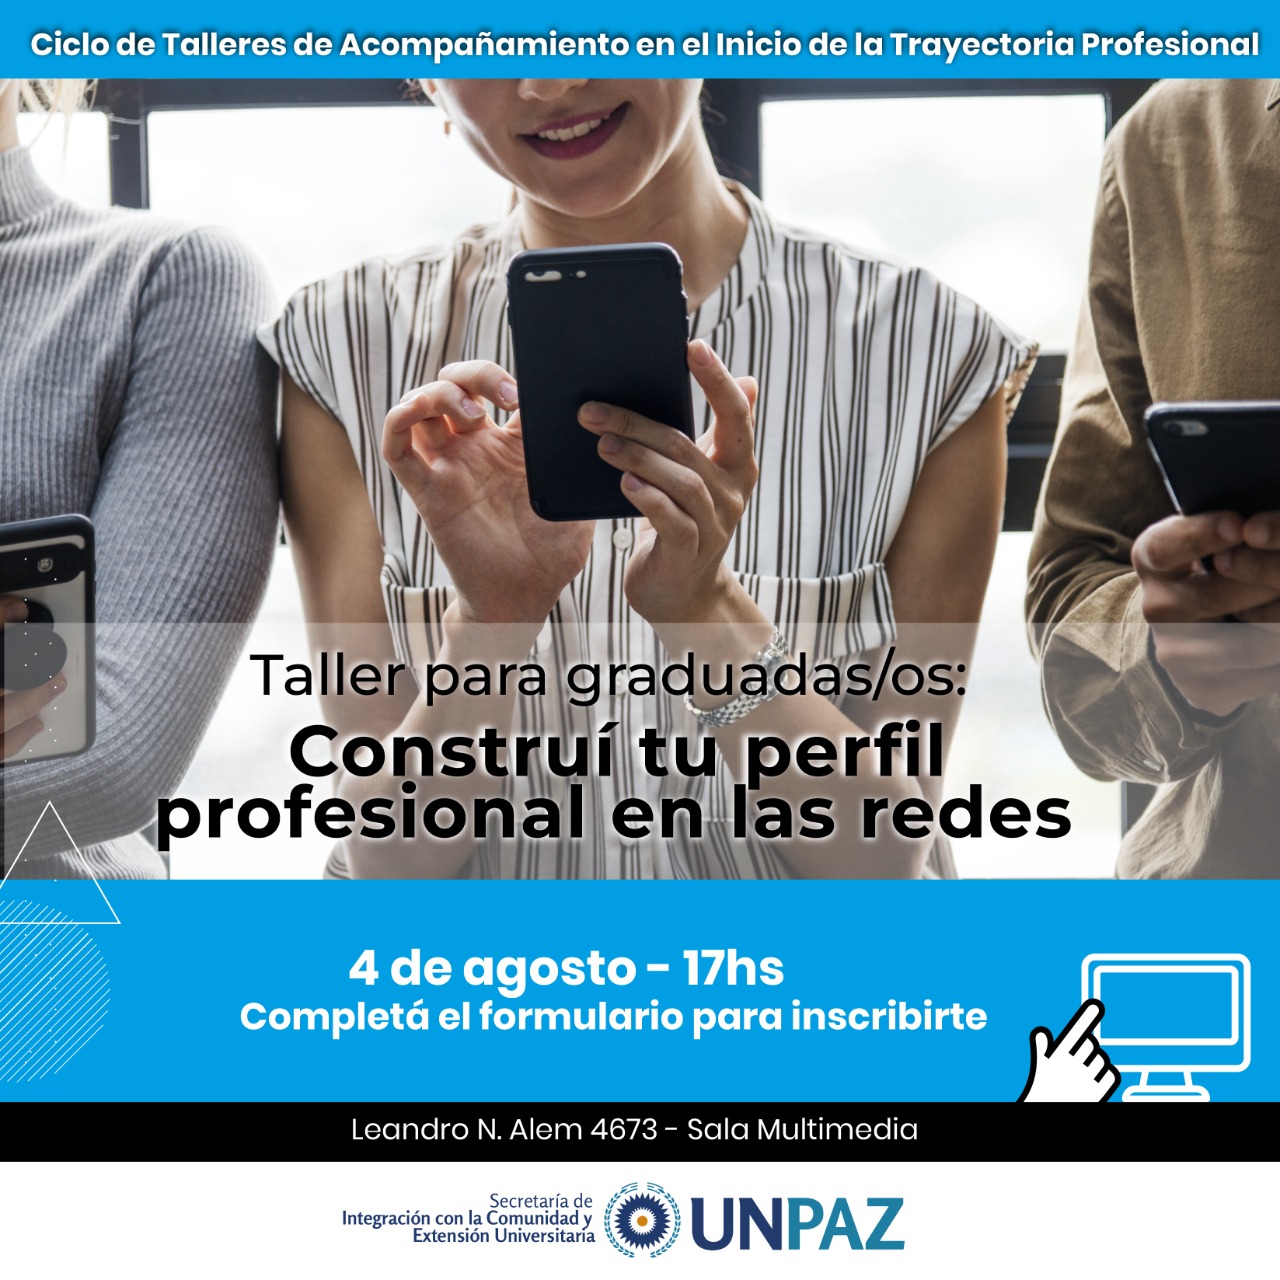 3° Encuentro del Ciclo de Talleres de Acompañamiento en el Inicio de la Trayectoria Profesional para graduadas/os: “Construí tu perfil profesional en las redes” - UNPAZ